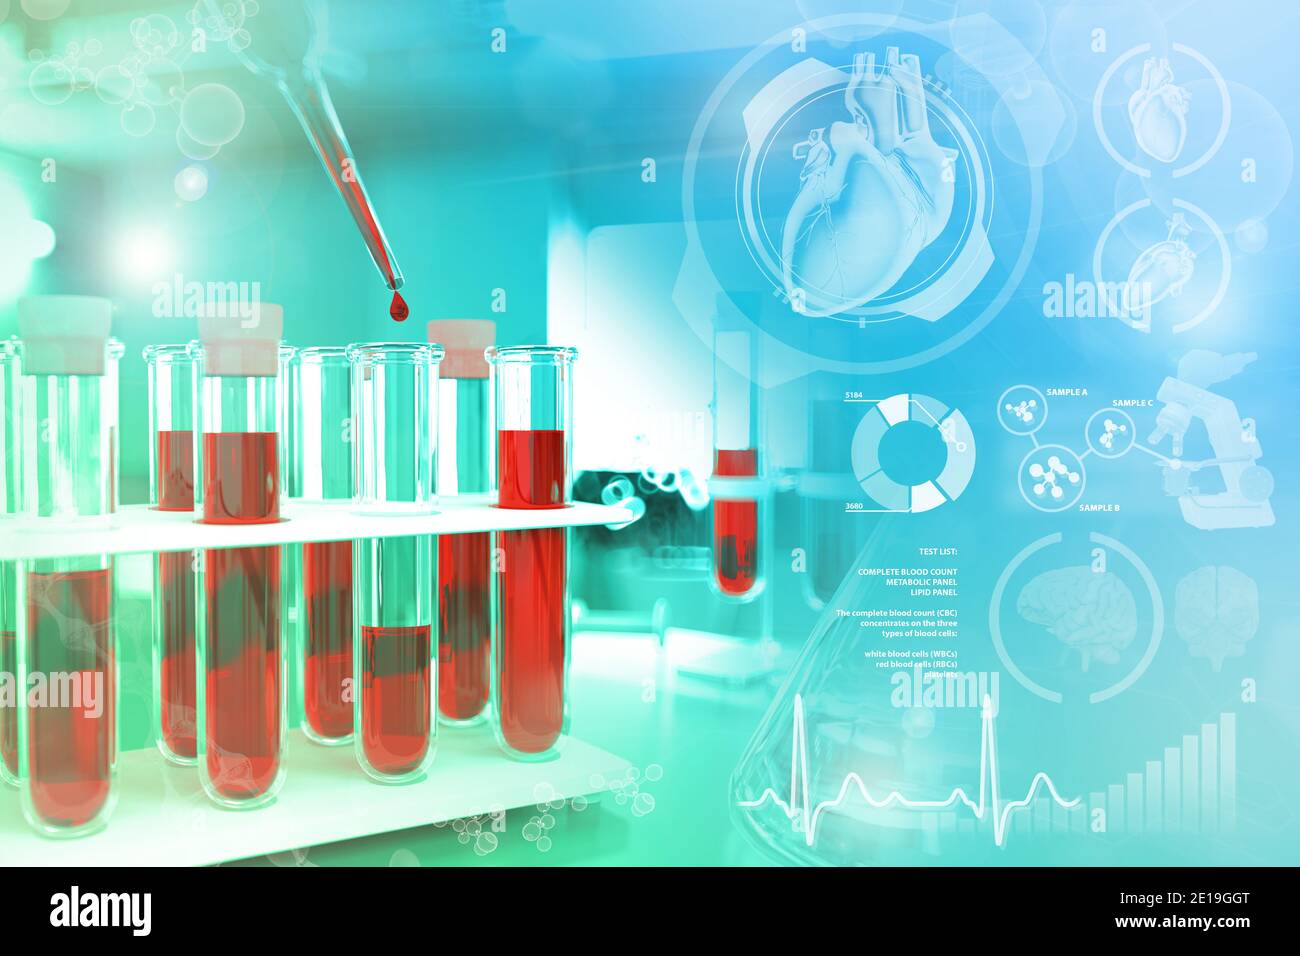 Tubes à essai dans les installations pharmaceutiques - test sanguin pour l'hémoglobine ou le lupus, illustration médicale 3D avec superposition de gradient créative Banque D'Images